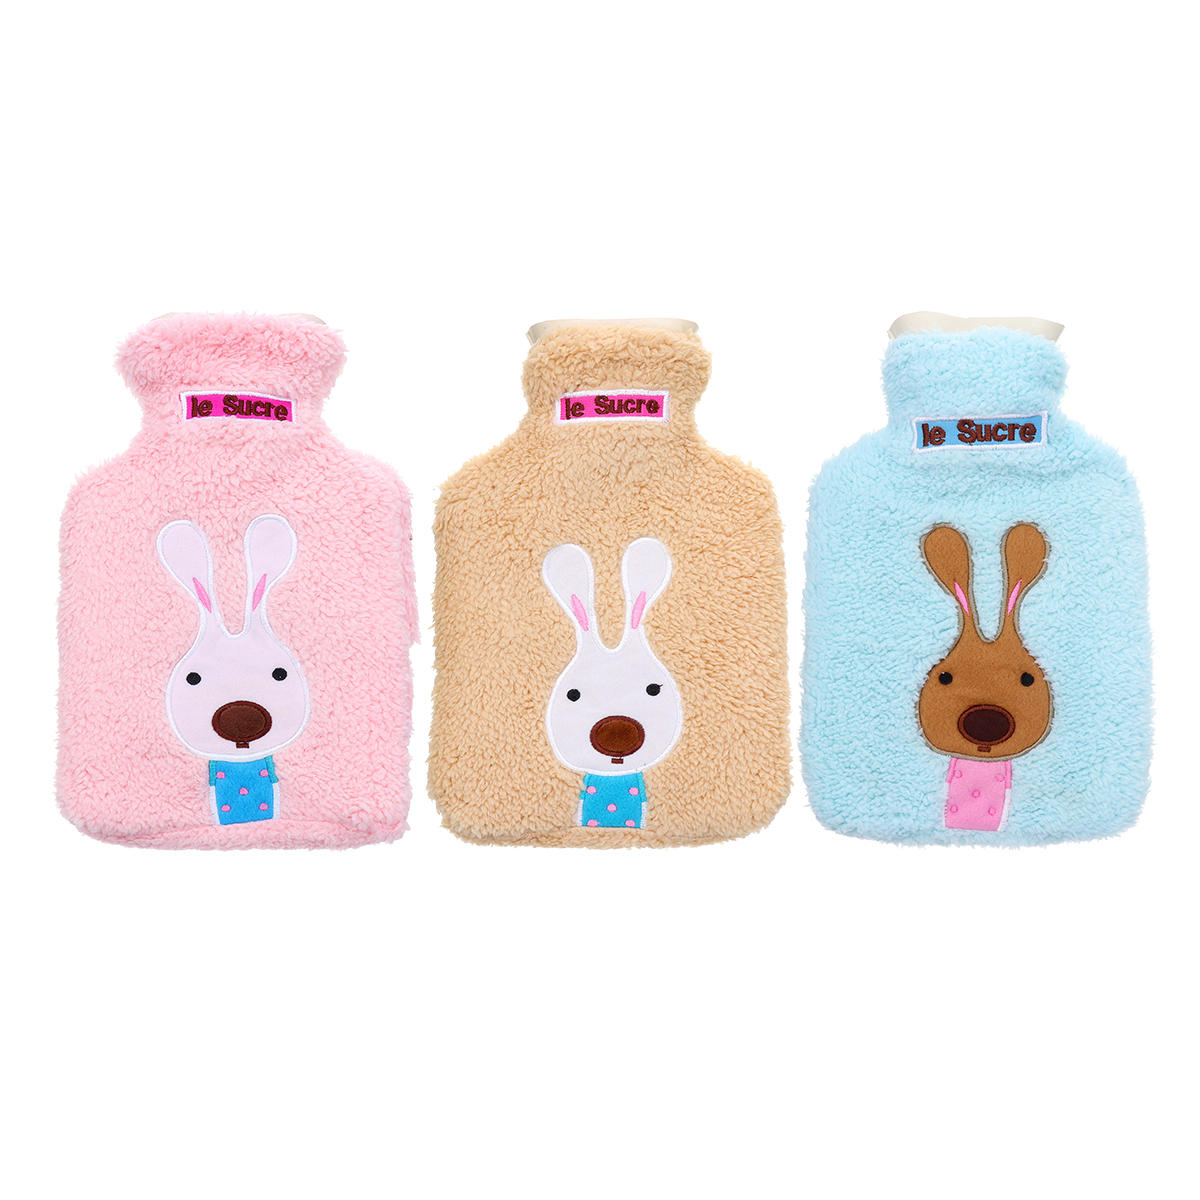 21x14 cm Tragbare Wärmflasche Tasche Kreative Niedlichen Cartoon Kaninchen Handwärmer